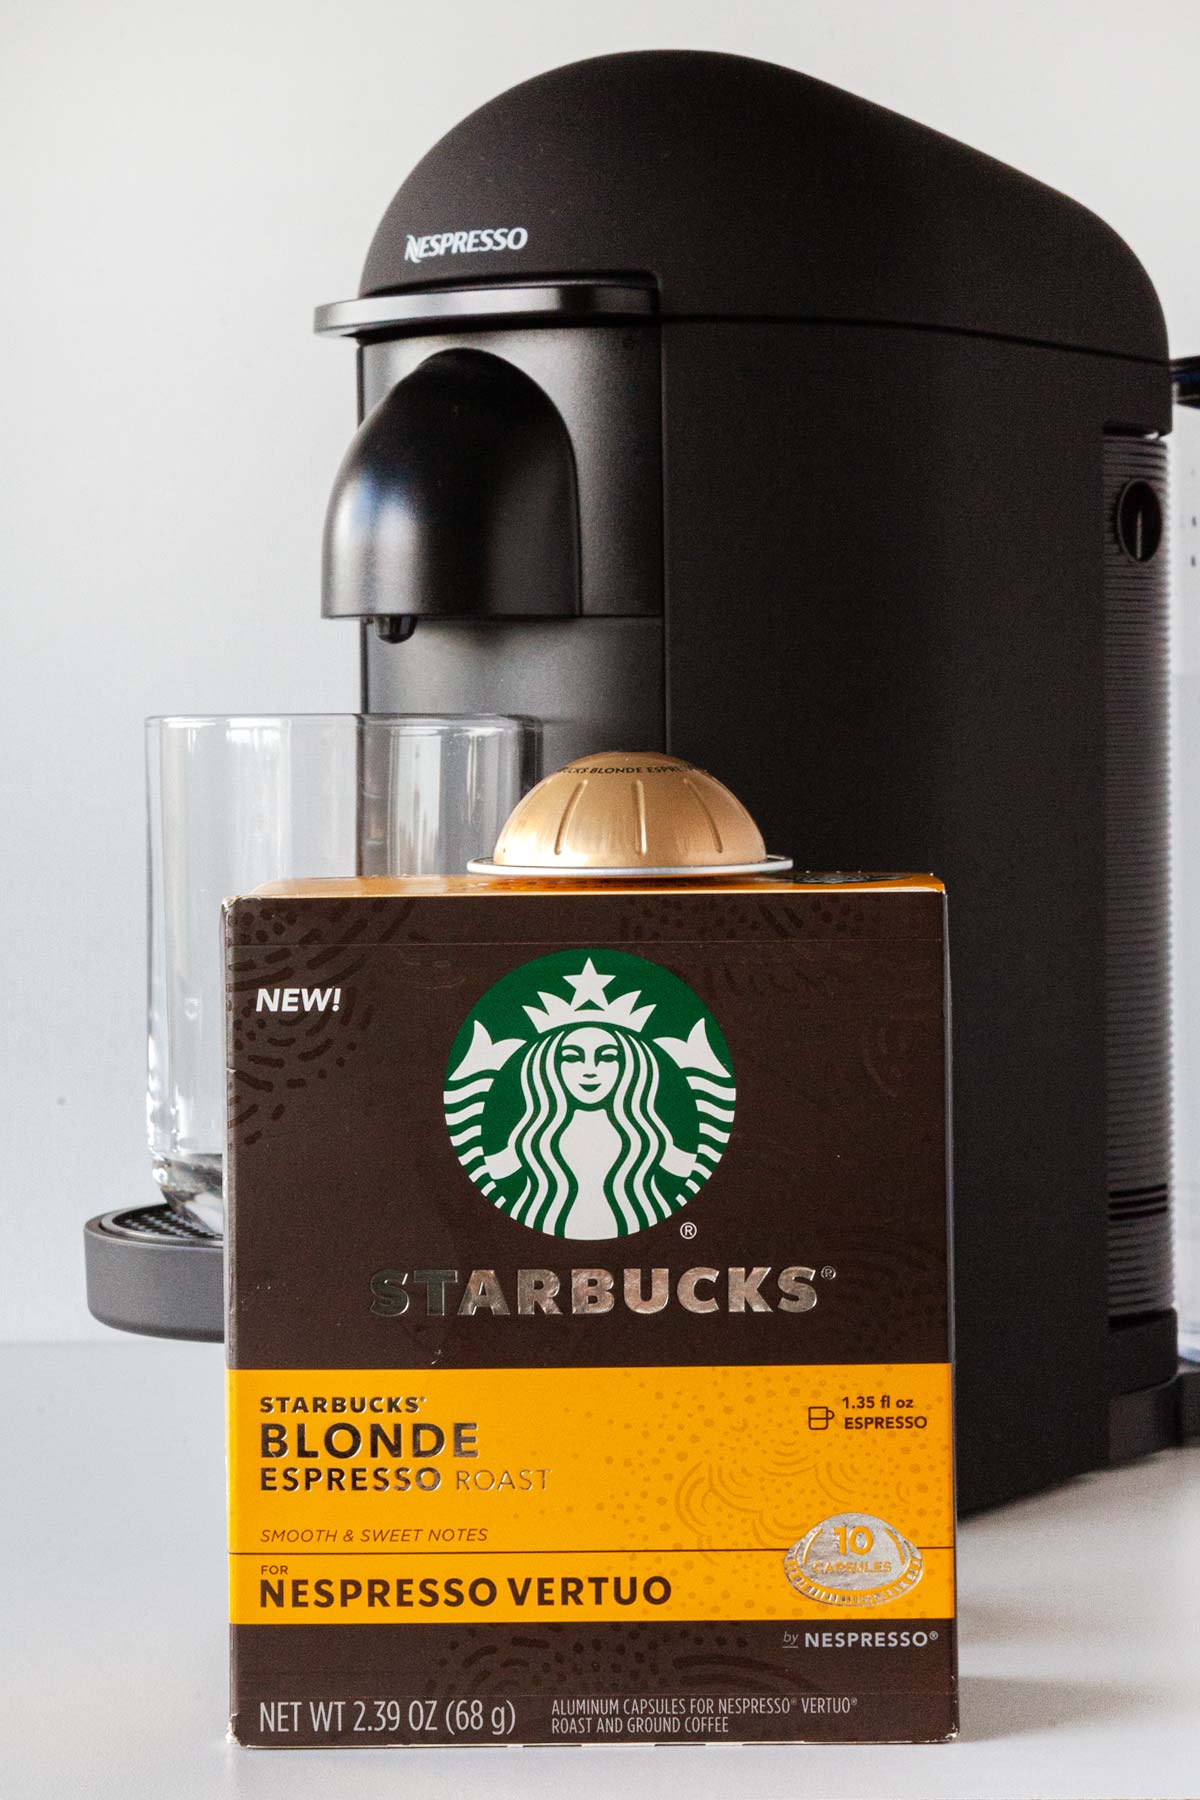 Nespresso Starbucks Blonde Espresso capsule box in front of a Nespresso machine.